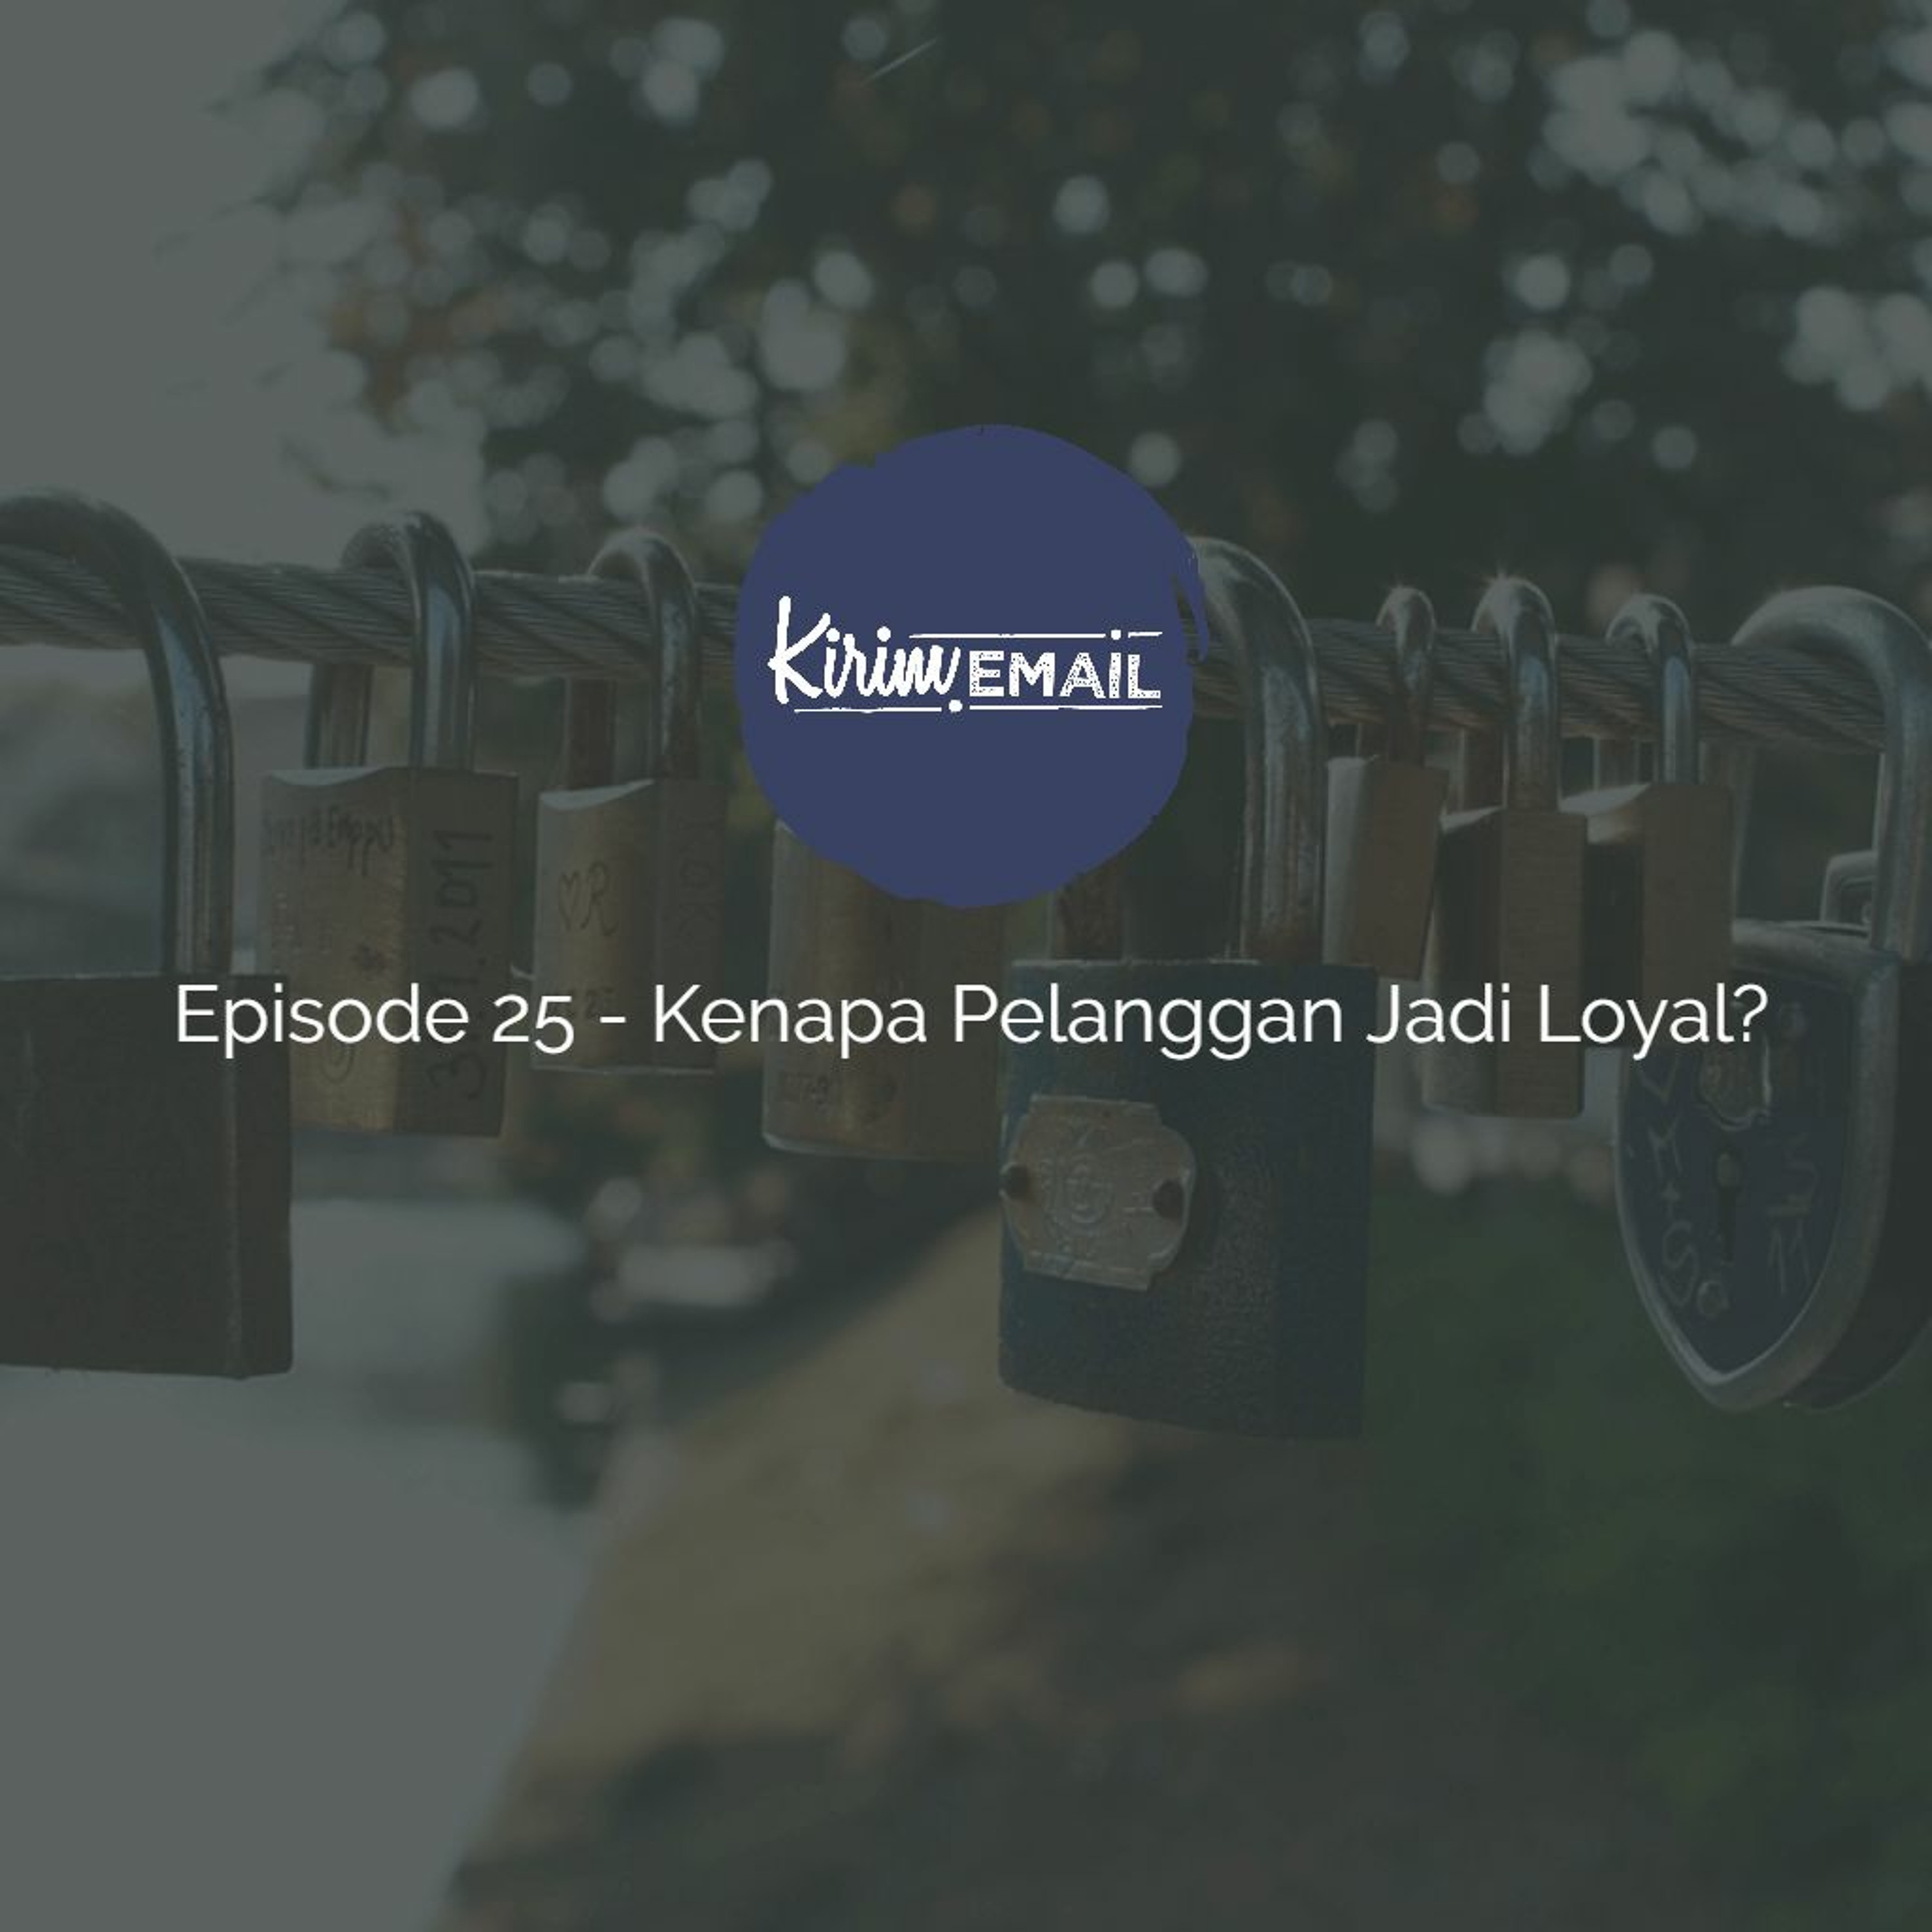 Episode 25 - Kenapa Pelanggan Jadi Loyal?